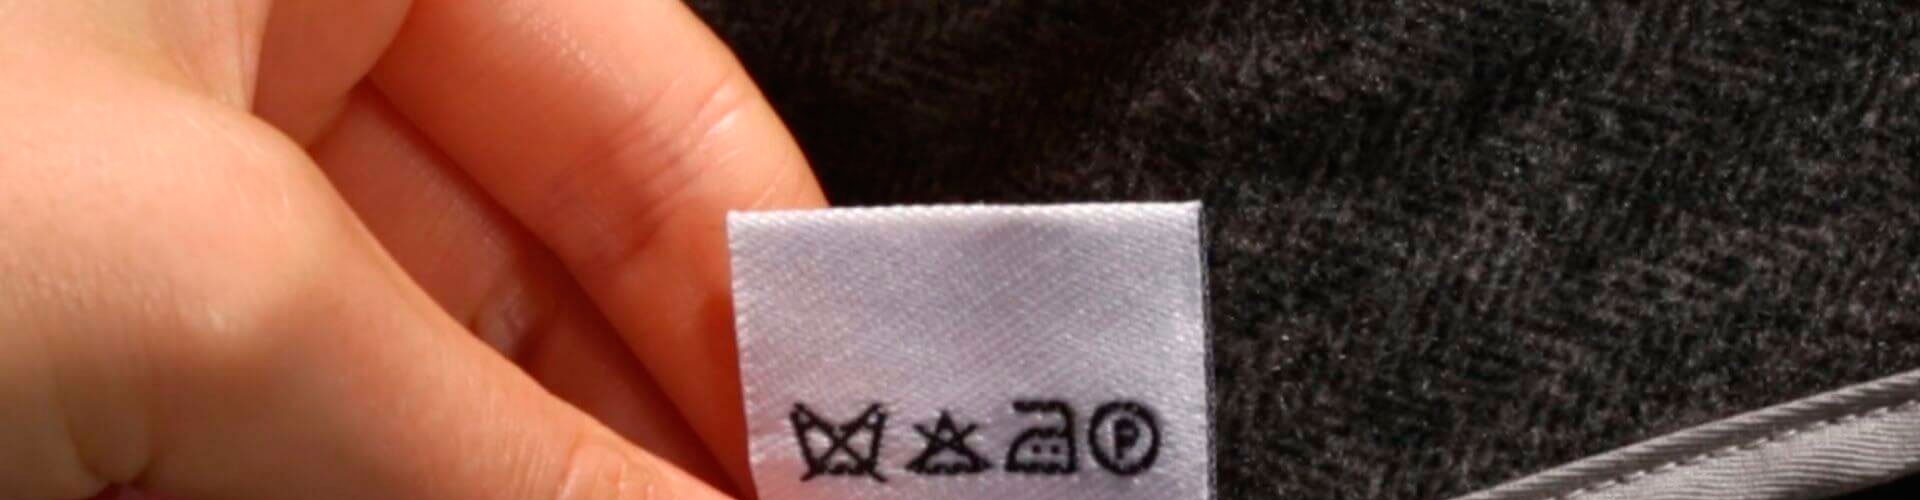 Расшифровка значков по уходу за текстильными изделиями